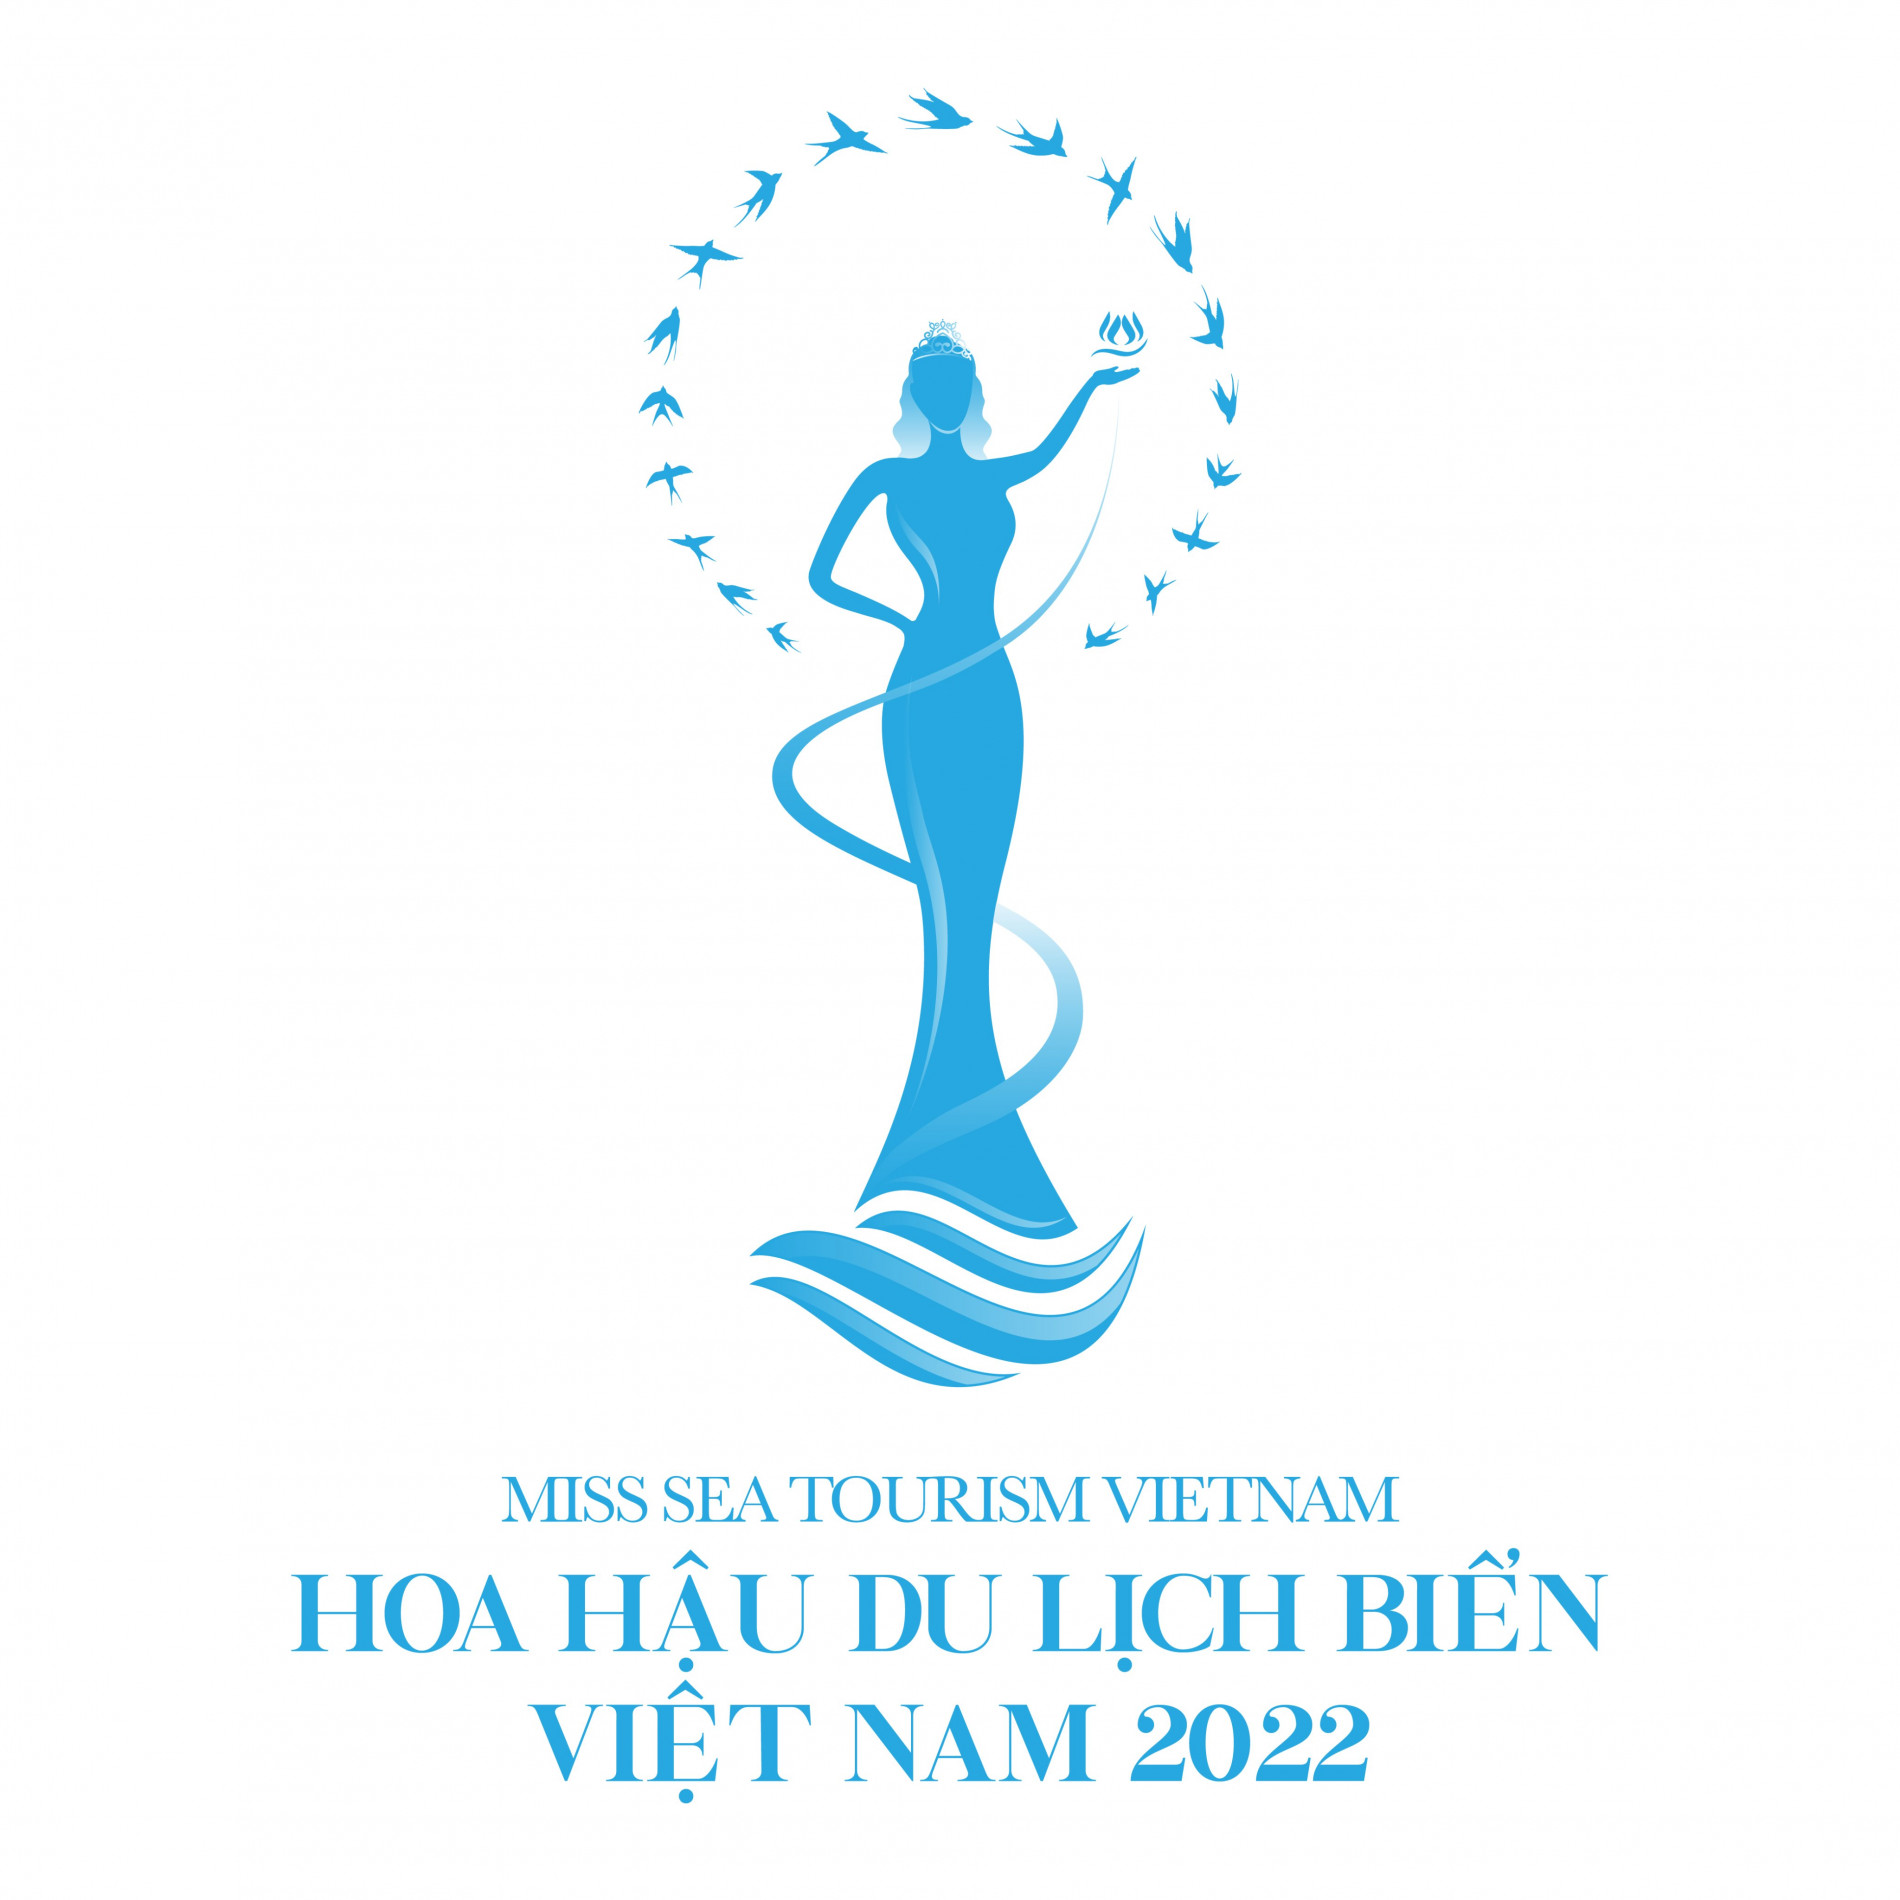 Cuộc thi Hoa Hậu Du lịch Biển Việt Nam 2022: Tôn vinh vẻ đẹp của người phụ nữ Việt Nam hiện đại